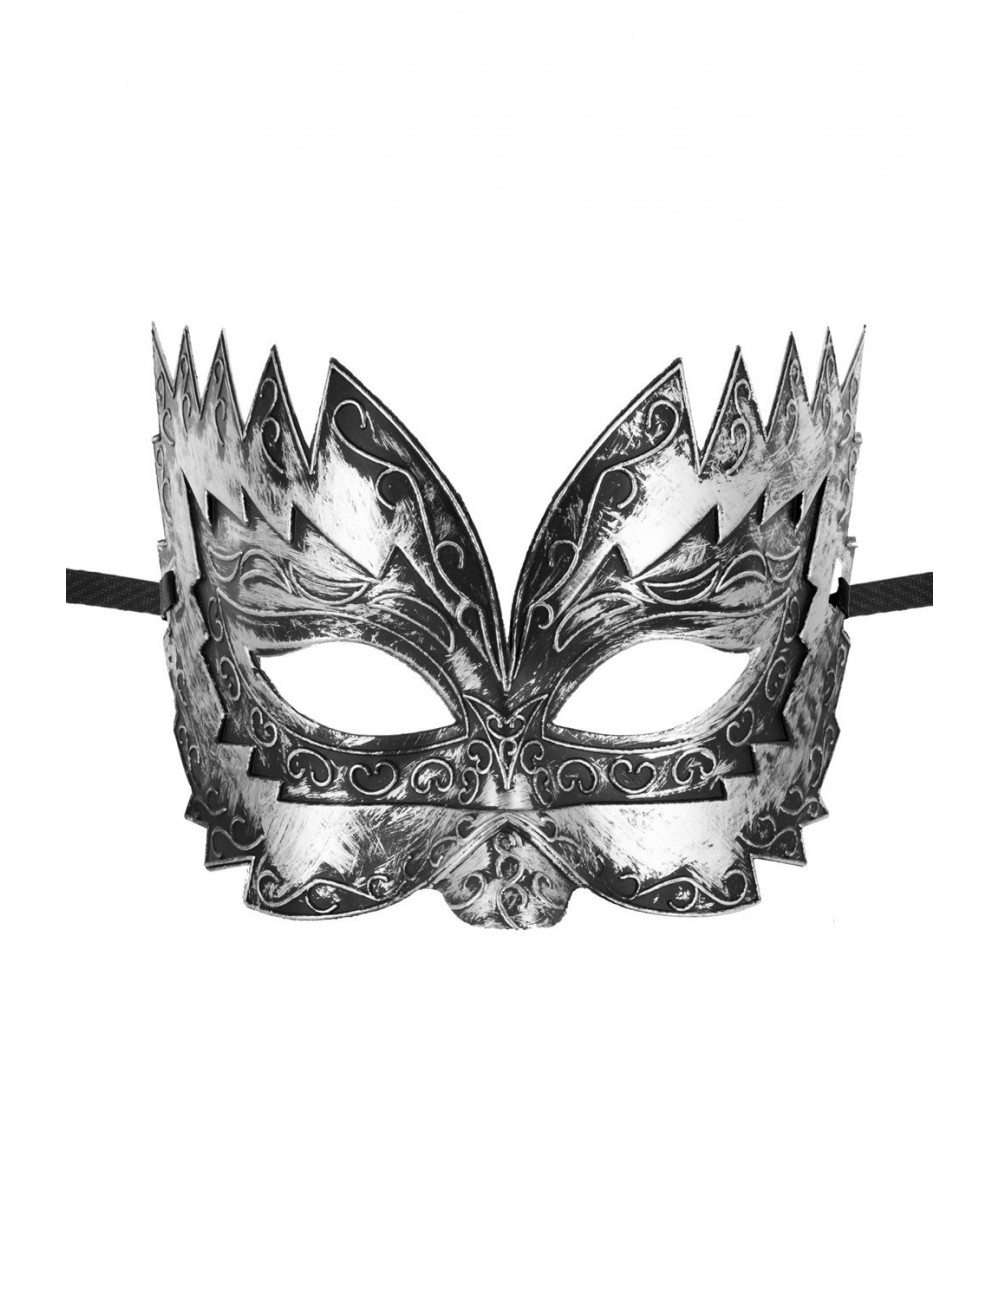 Sextoys - Masques, liens et menottes - Masque haut argenté Don Giovanni - CC709730008000 - Maskarade